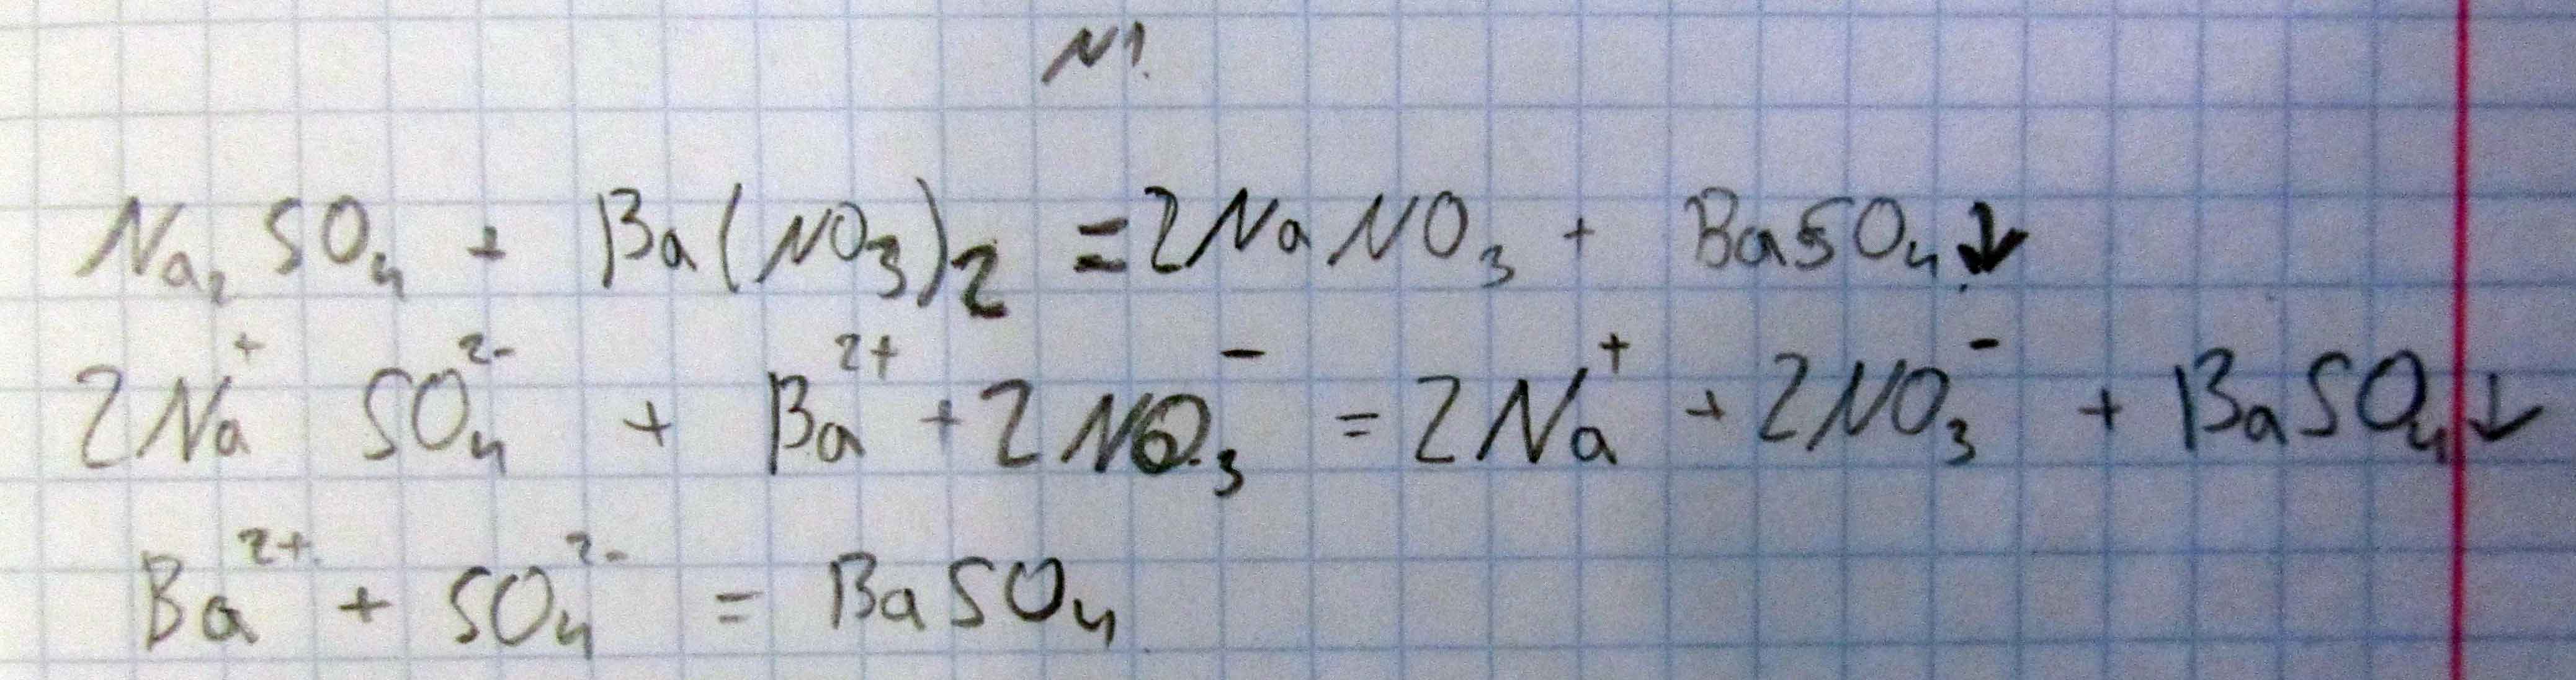 ﻿﻿Составить ионное уравнение реакции сульфата натрия и нитрата бария(в полной форме  Окислительно-восстановительную реакцию цинка и серной кислоты